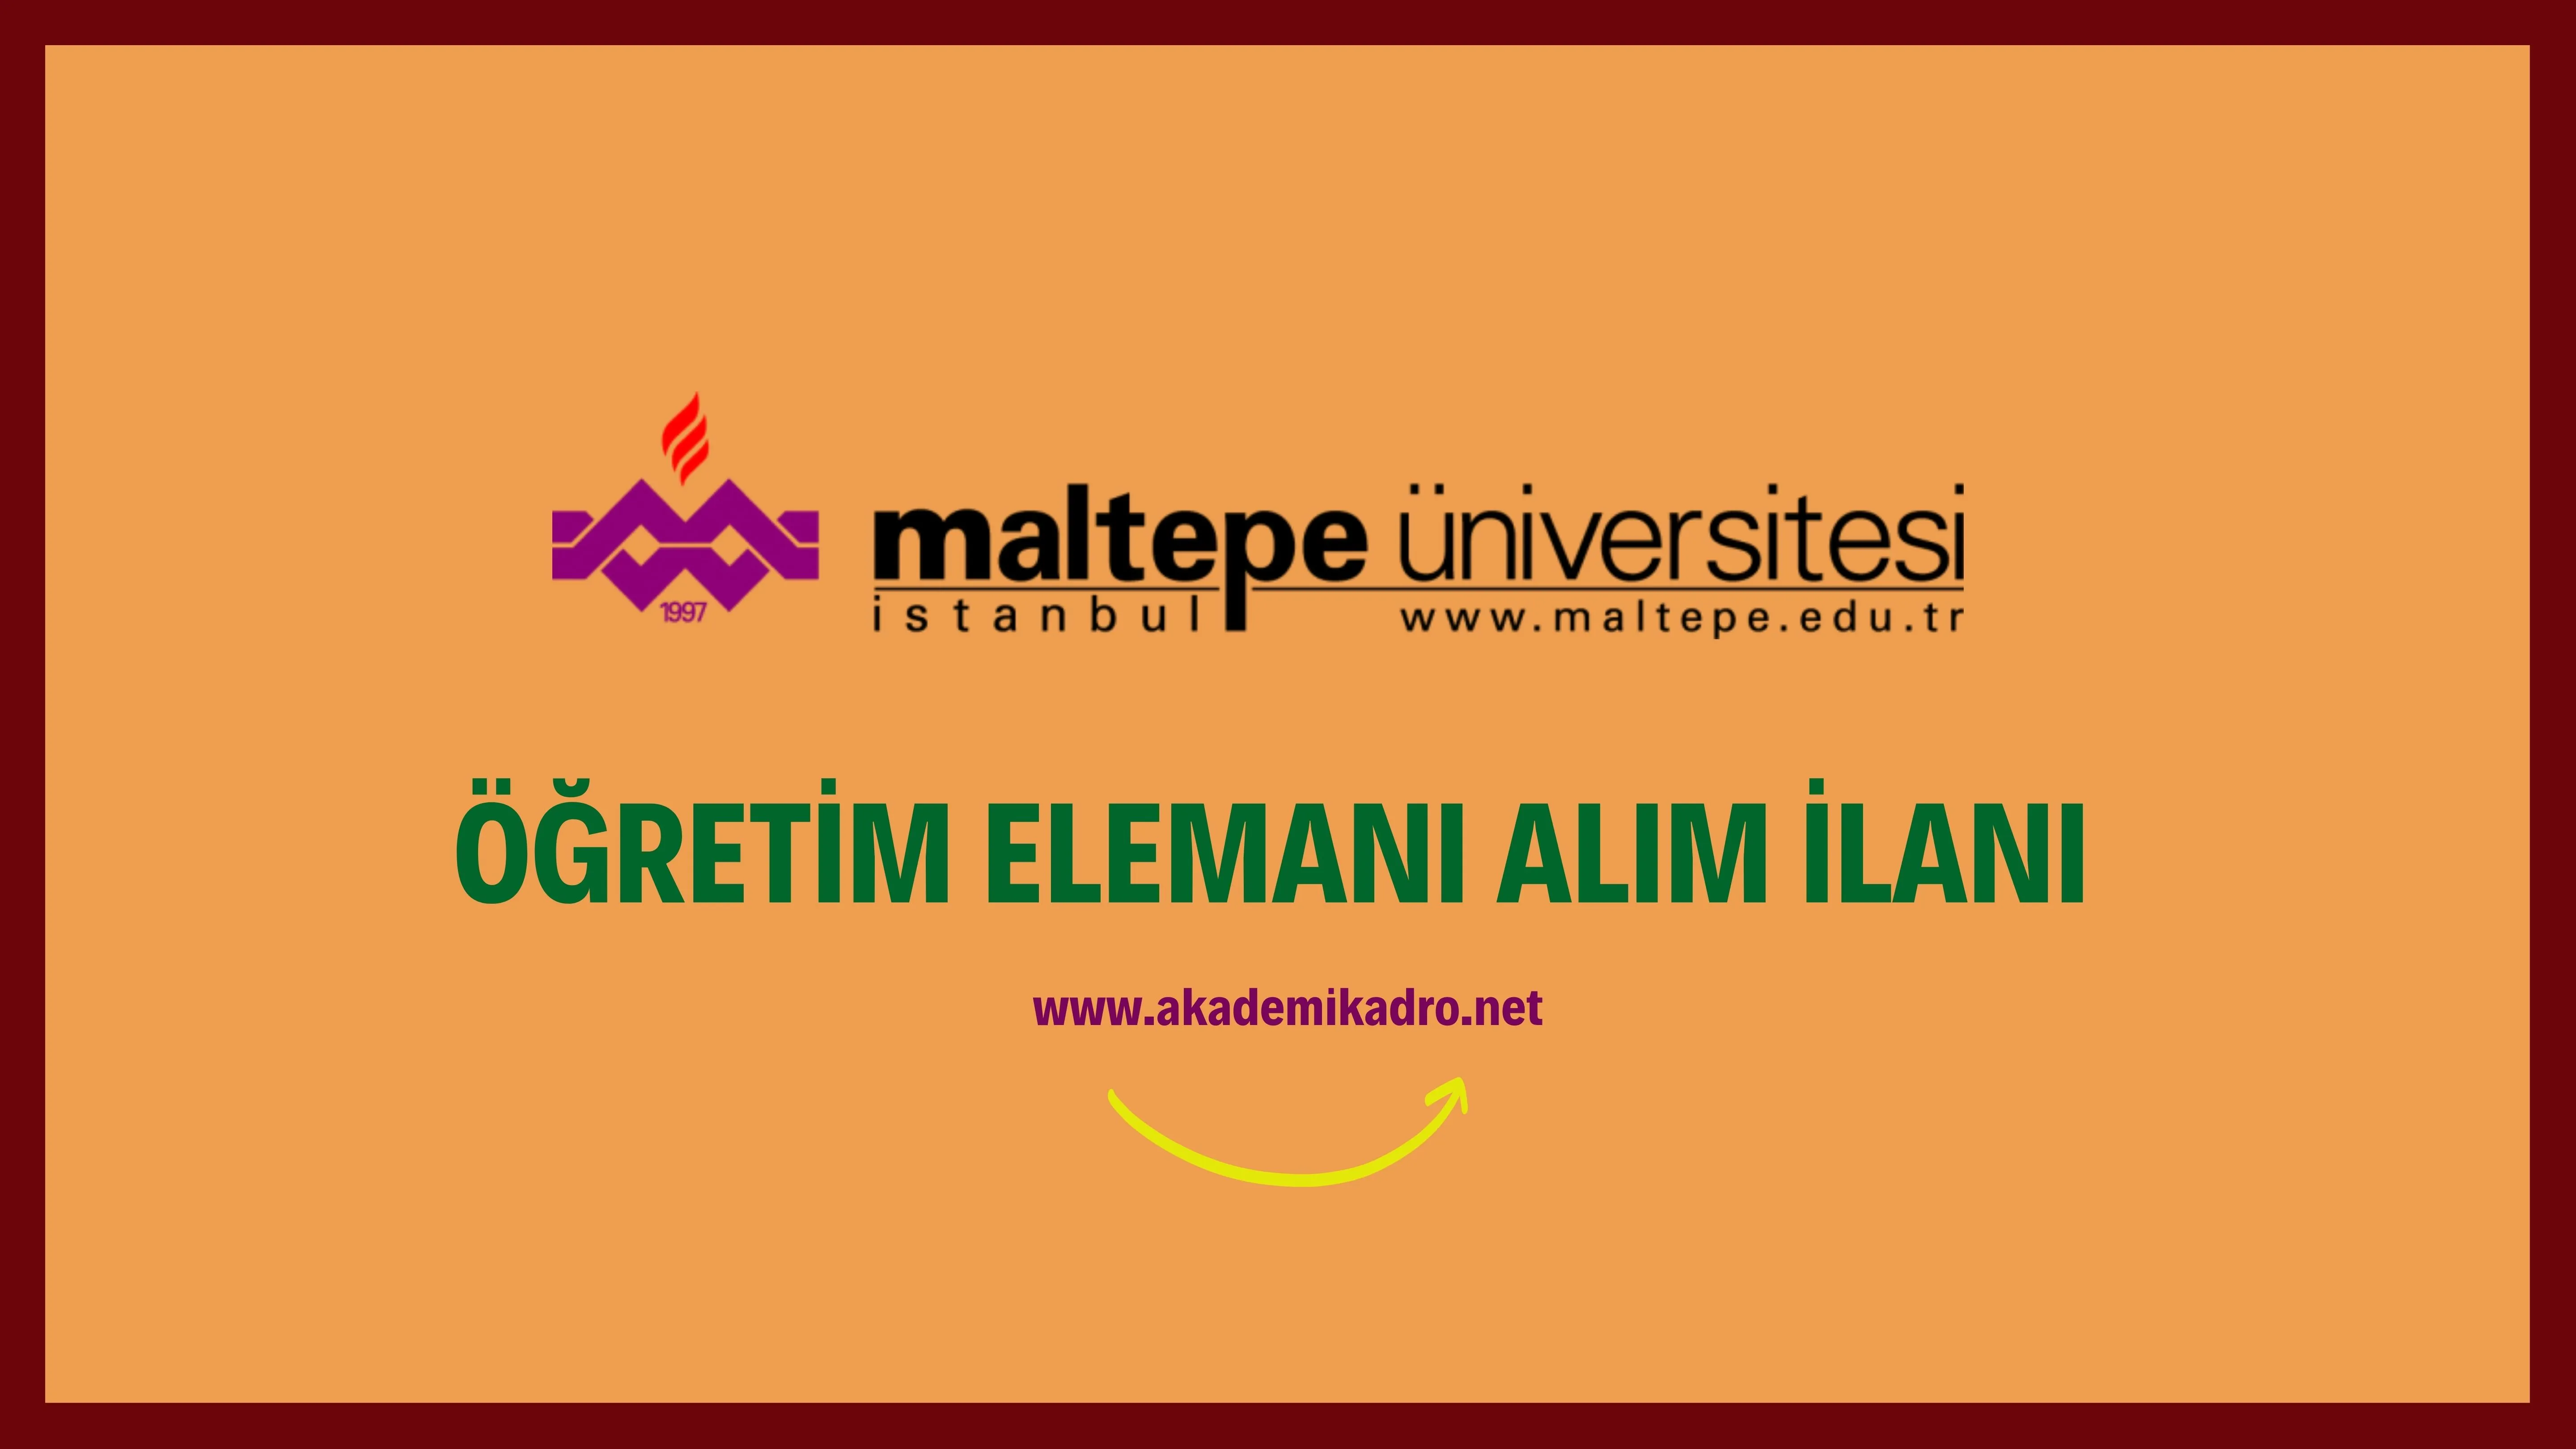 Maltepe Üniversitesi 15 Araştırma görevlisi, 3 Öğretim Görevlisi ve 38 Öğretim üyesi alacaktır. Son başvuru tarihi 07 Nisan 2023